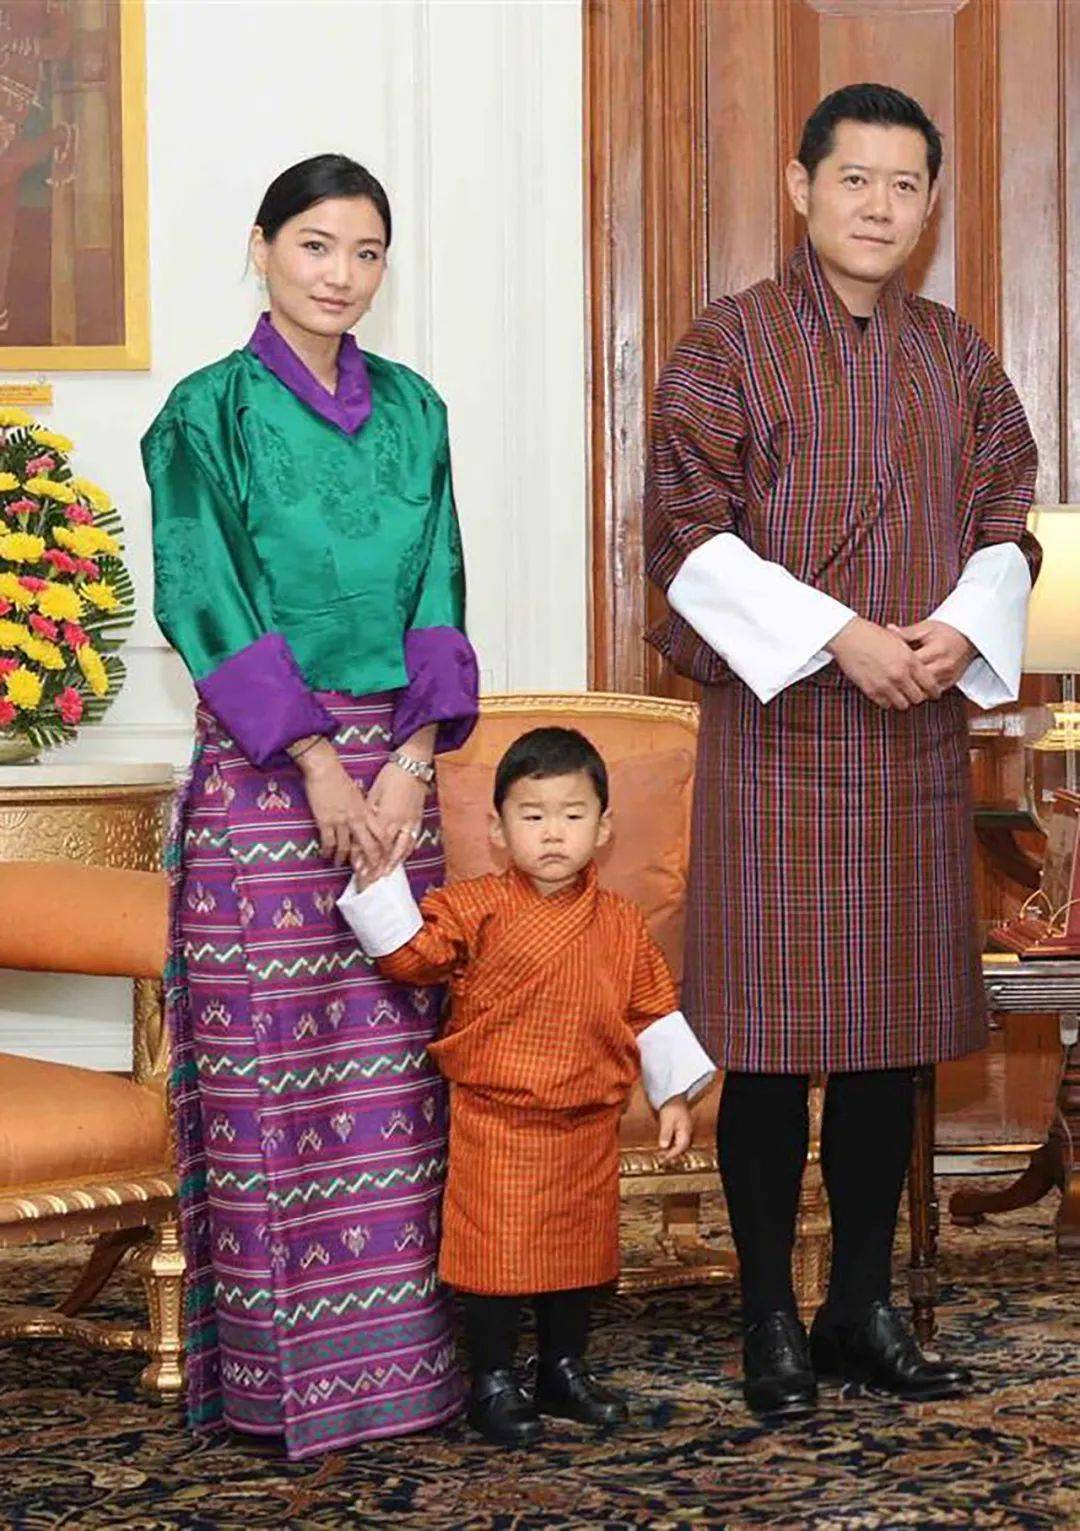 不丹国王夫妇访航空公司,40岁国王与王后拉开身体距离,形同路人